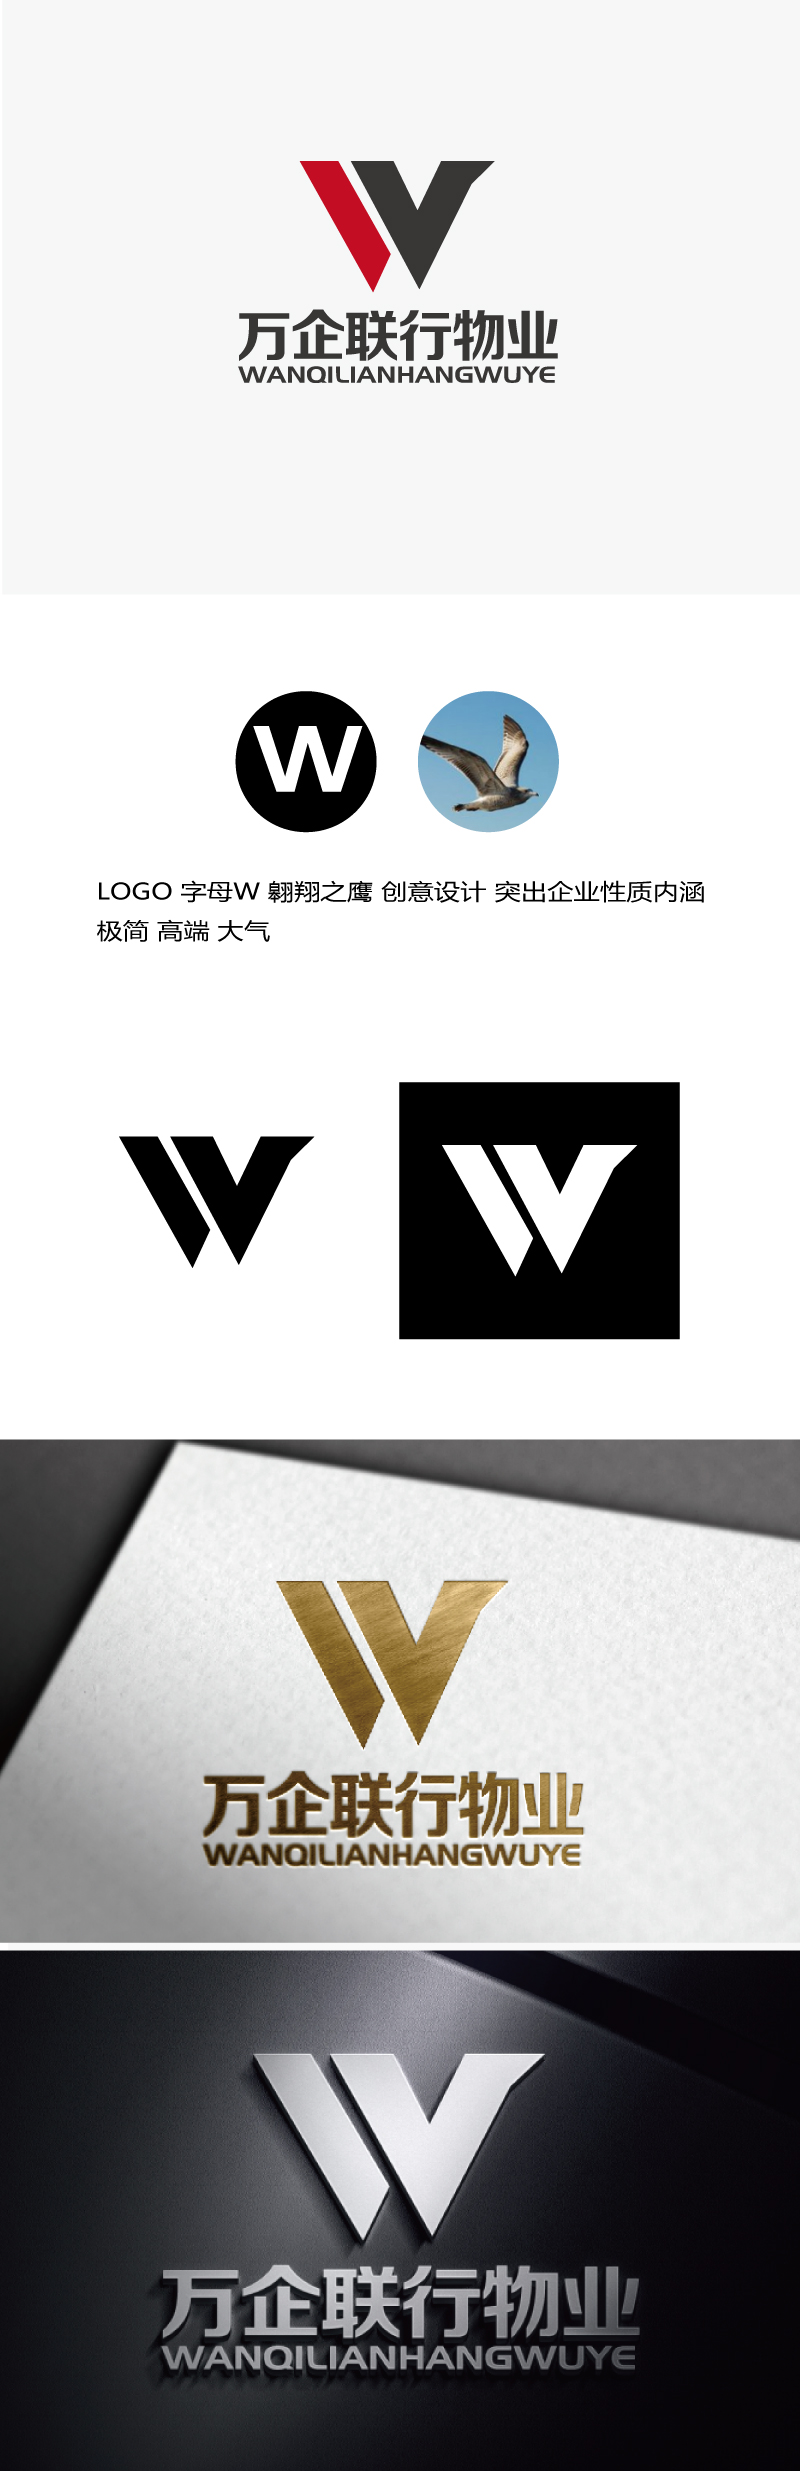 张俊的万企联行物业服务有限公司logo设计